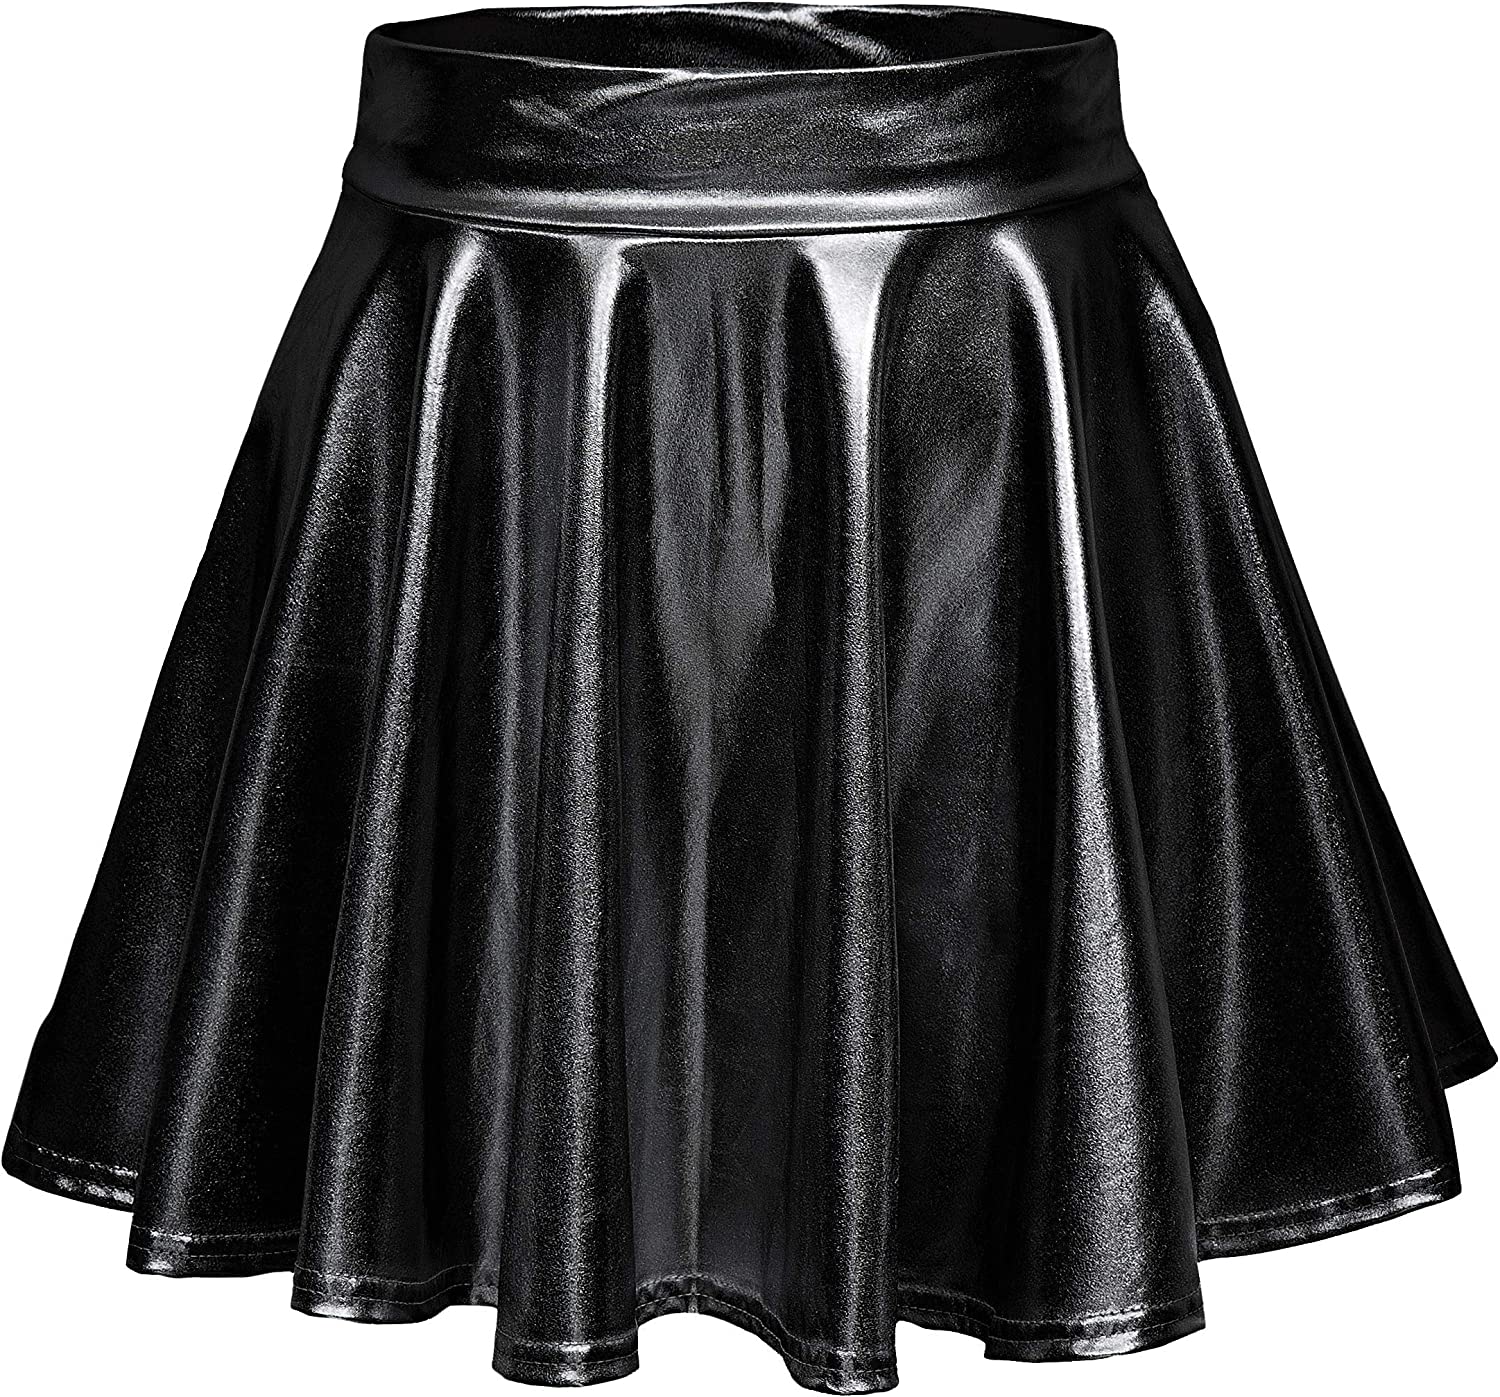 Avidlove Metallic Skirt for High Waisted Skirt Shiny Stretchy Mini A-Line Flared Skater Skirt S-XXL